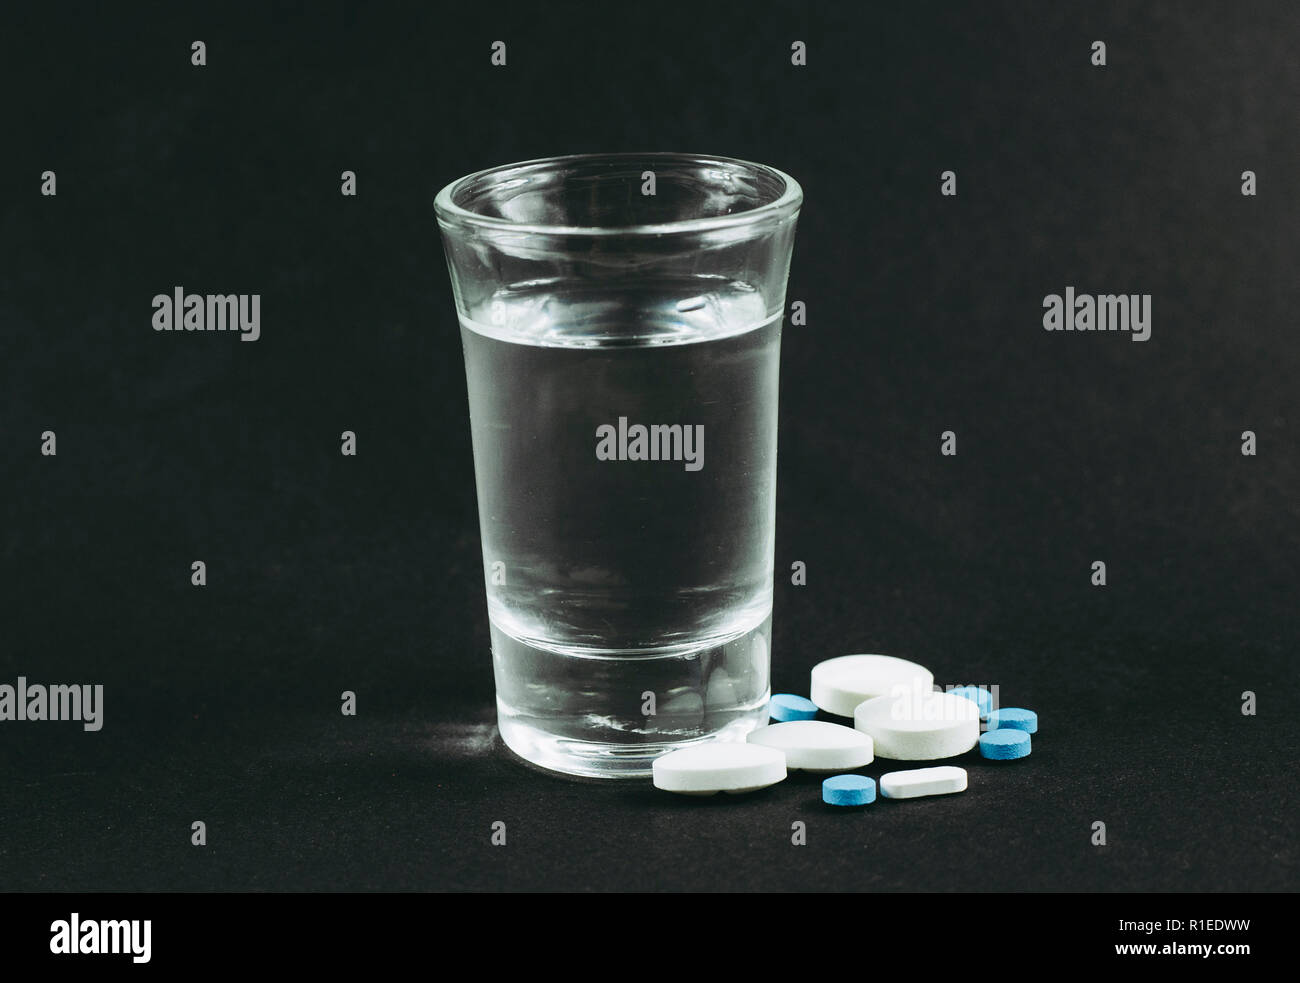 La miscelazione di alcool con farmaci pillole è cattivo concetto pericolose. Un bicchiere di vodka con compresse pillole di farmaci su sfondo nero. Foto Stock